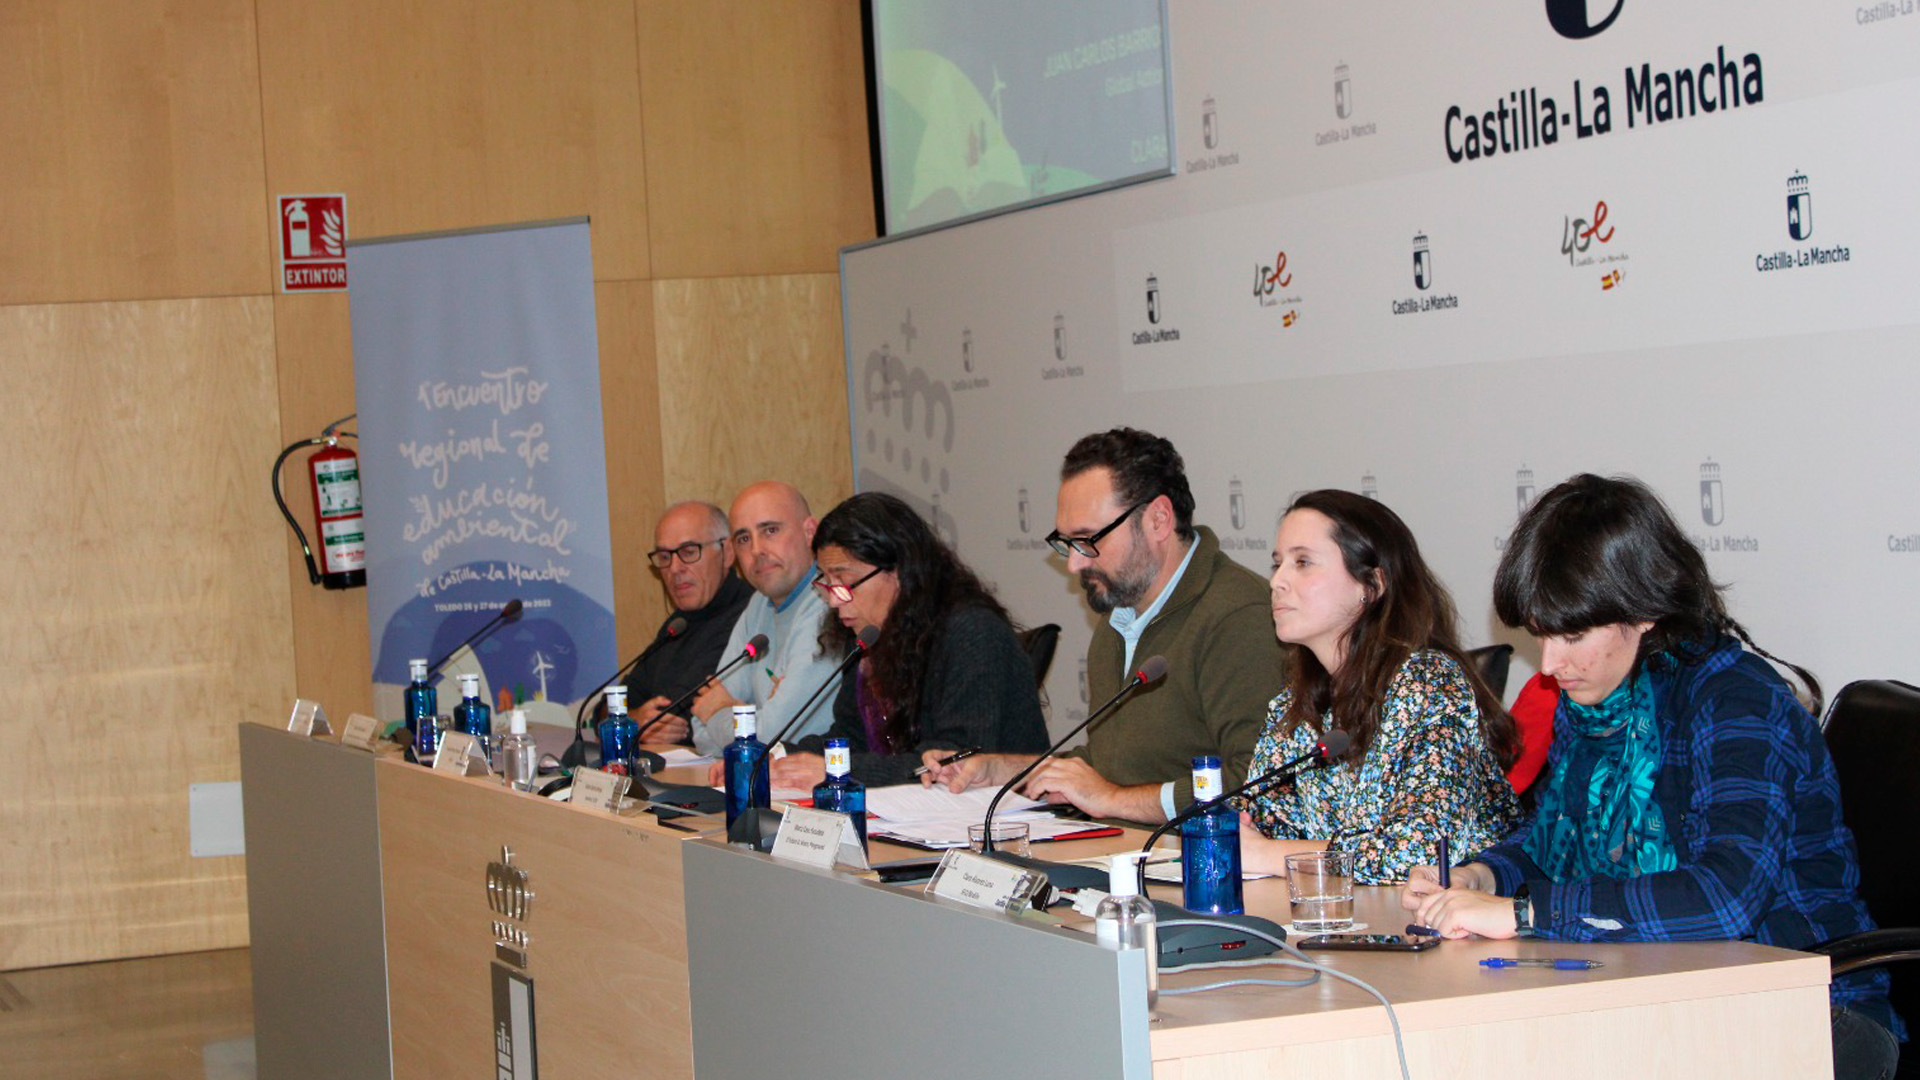 Participación en el I Encuentro Regional de Educación Ambiental de Castilla La Mancha